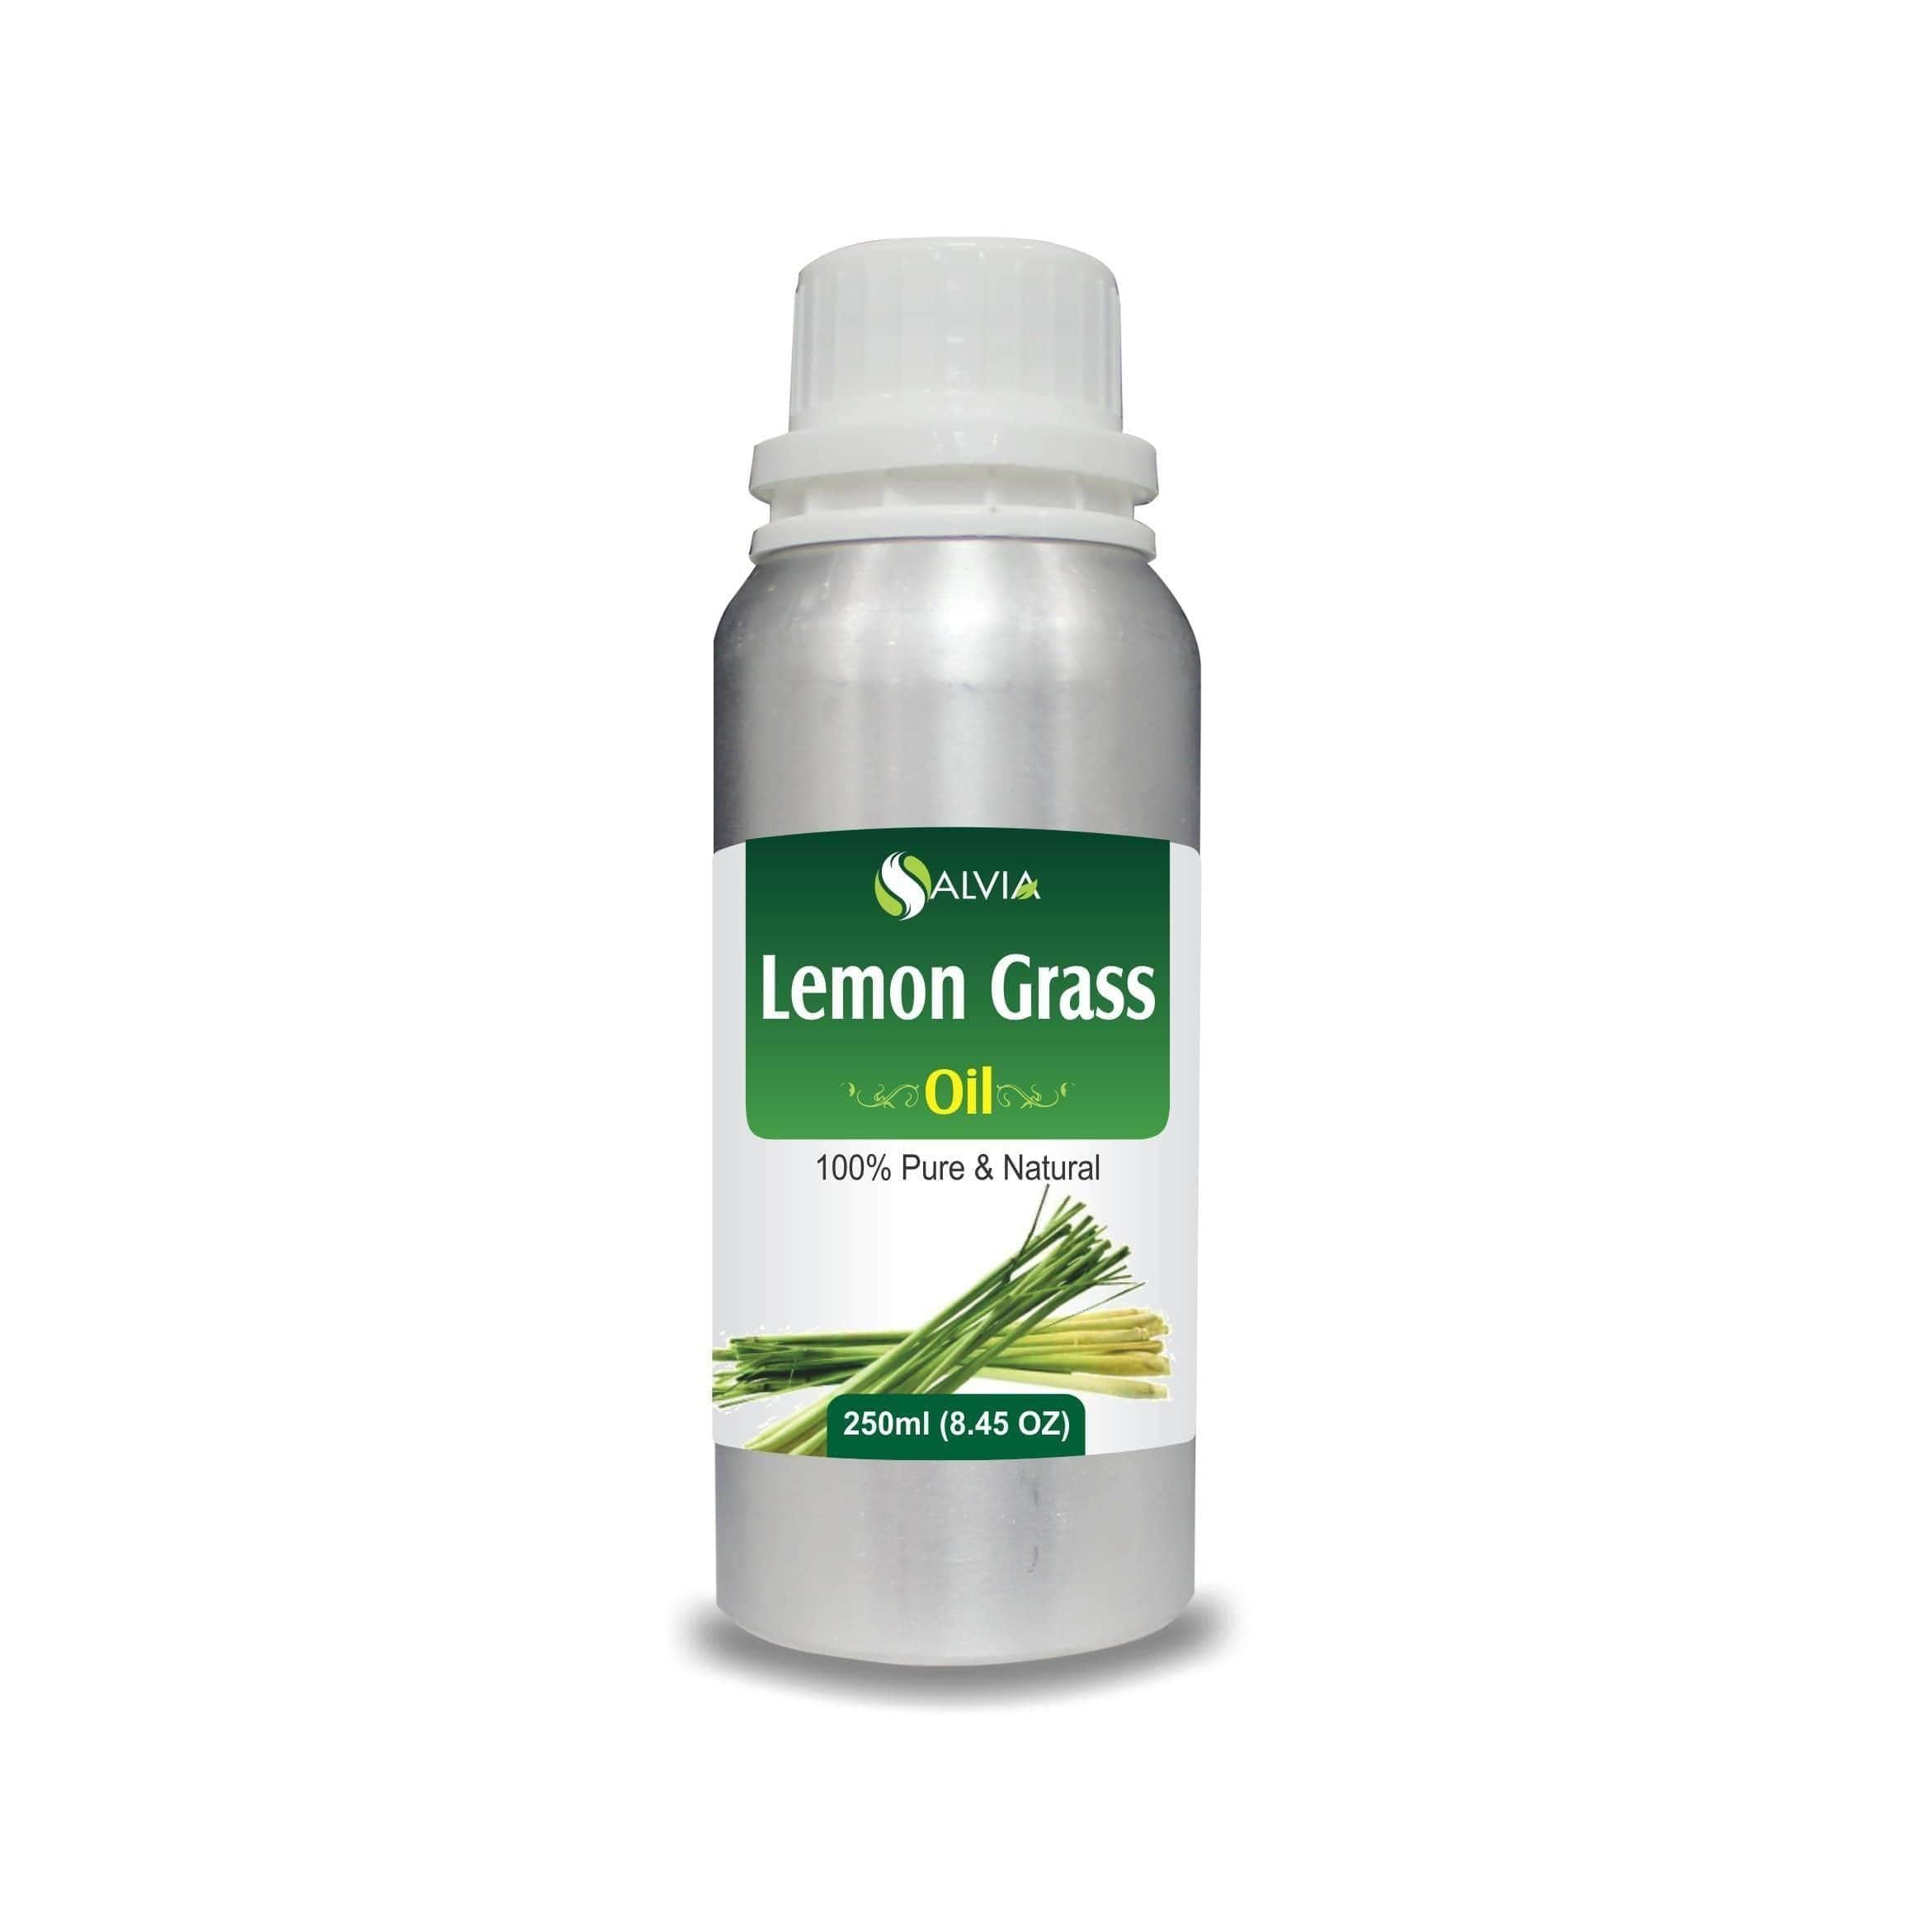 lemon grass benefits for skin